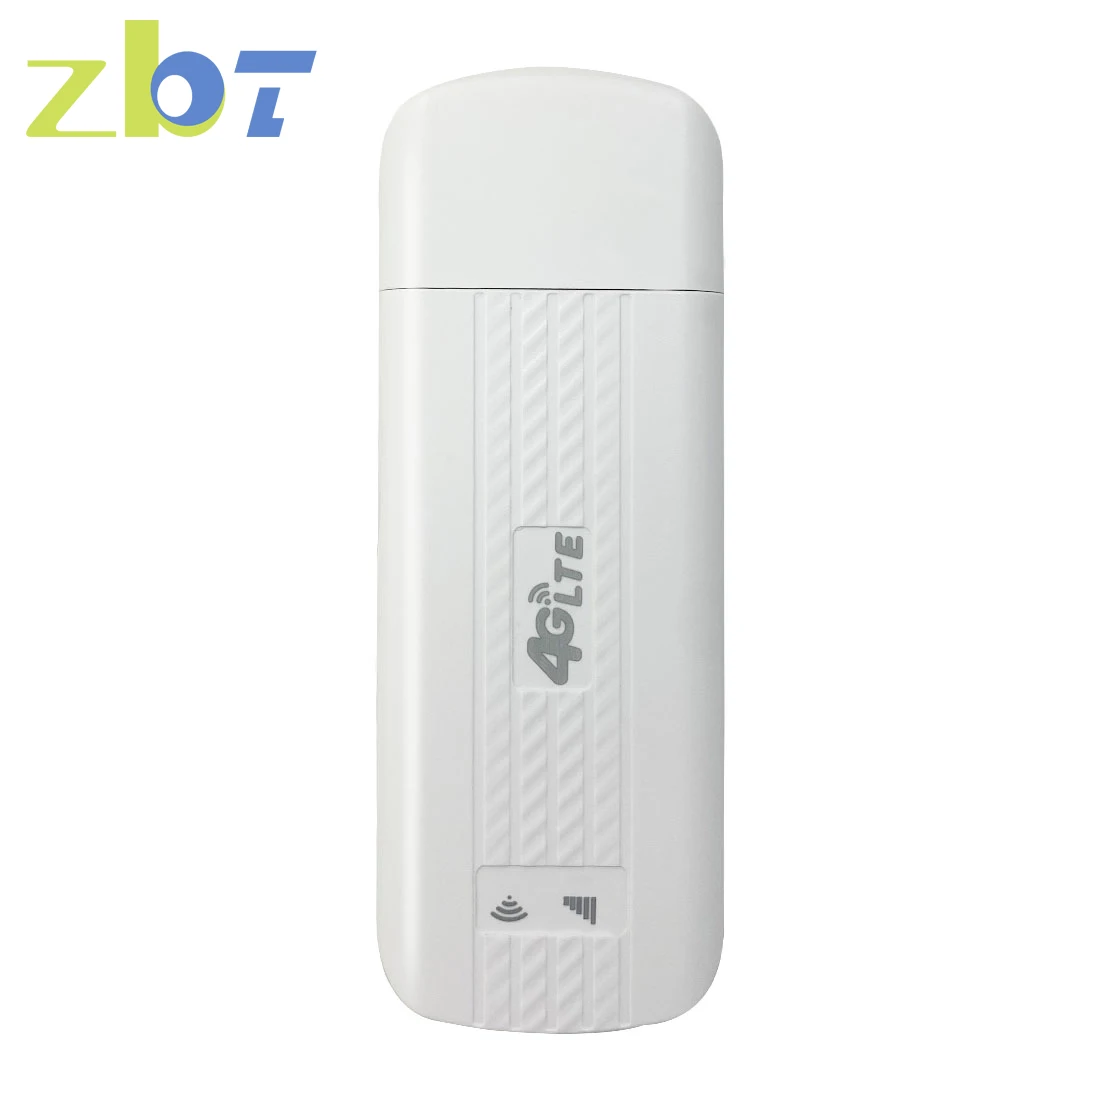 ZBT Wi-Fi-ключ USB 4G модем точка доступа Cat4 150 Мбит/с мобильный беспроводной разблокированный автомобильный роутер GSM UMTS LTE U-диски слот для Sim-карты